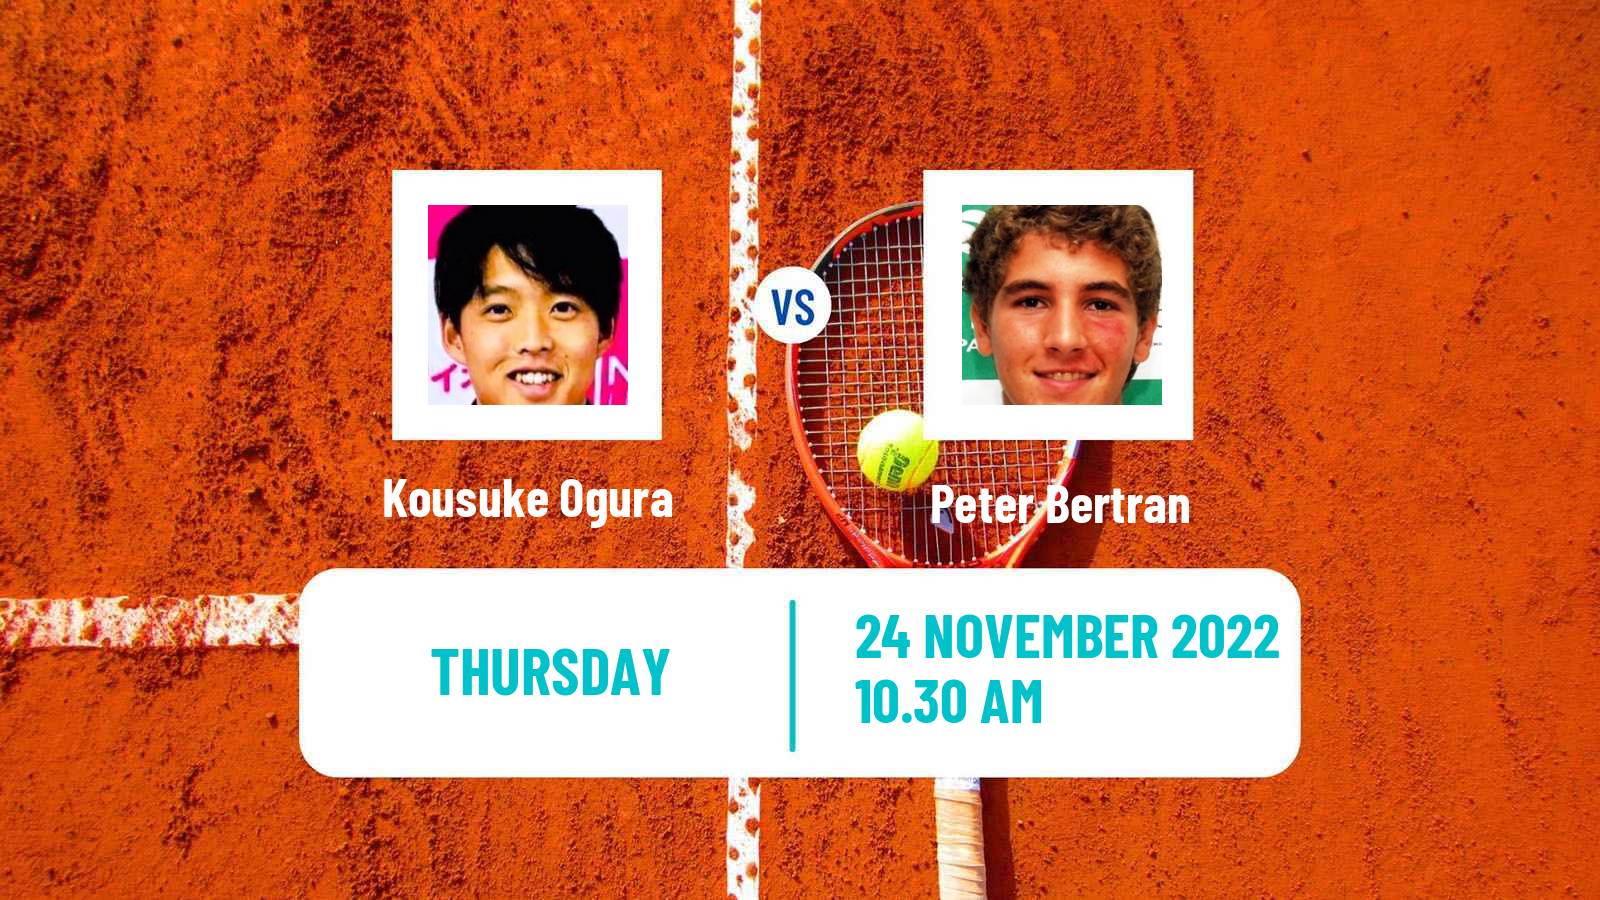 Tennis ITF Tournaments Kousuke Ogura - Peter Bertran